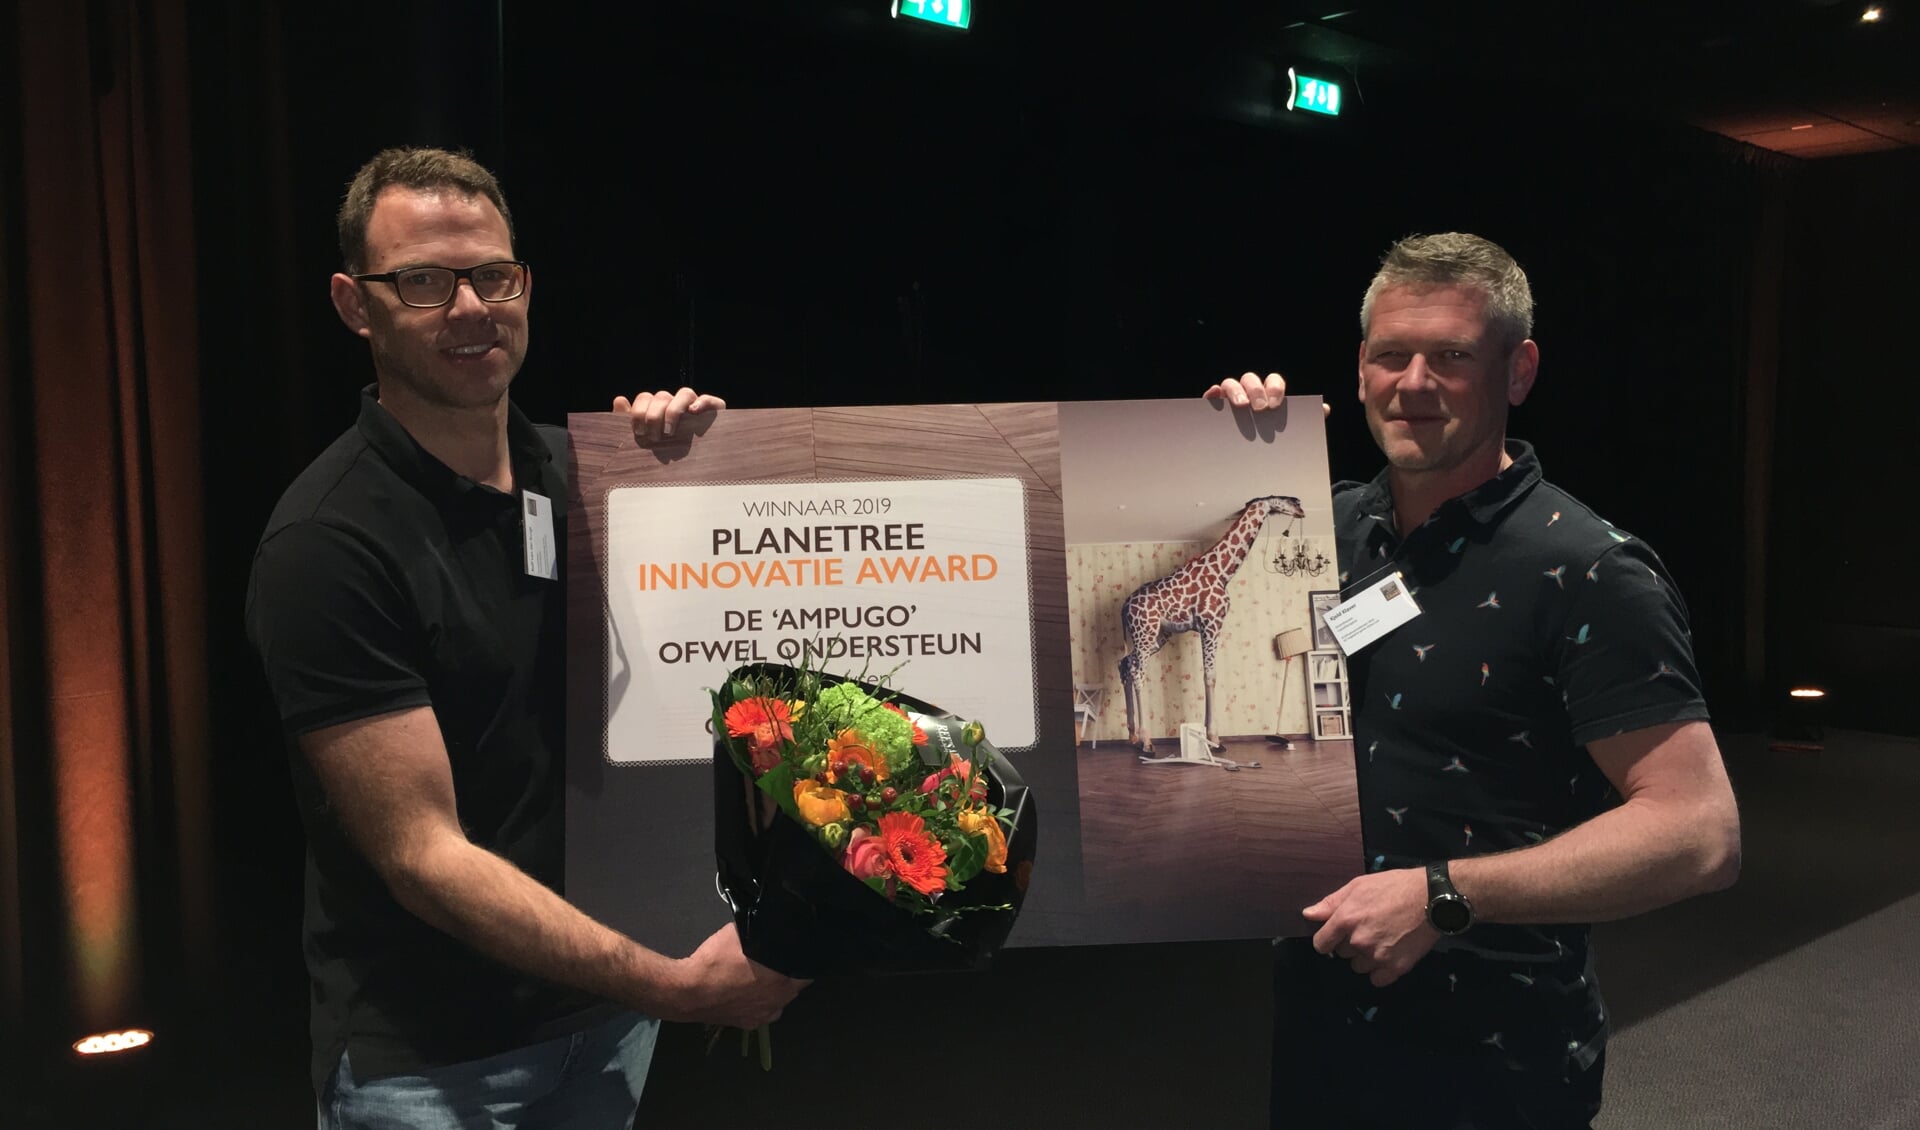 Fysiotherapeuten Rolf van der Burgt en Kjeld Klaver wonnen de Planetree innovatie award voor de AmpUgo.